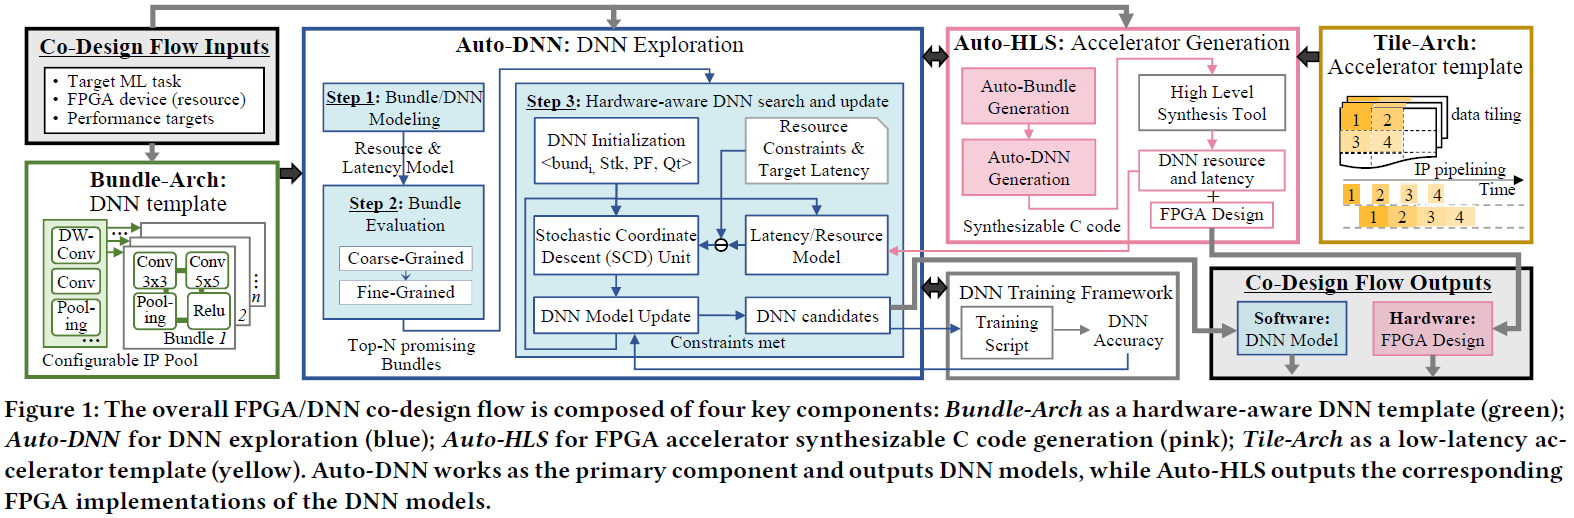 The overall FPGA/DNN co-design flow